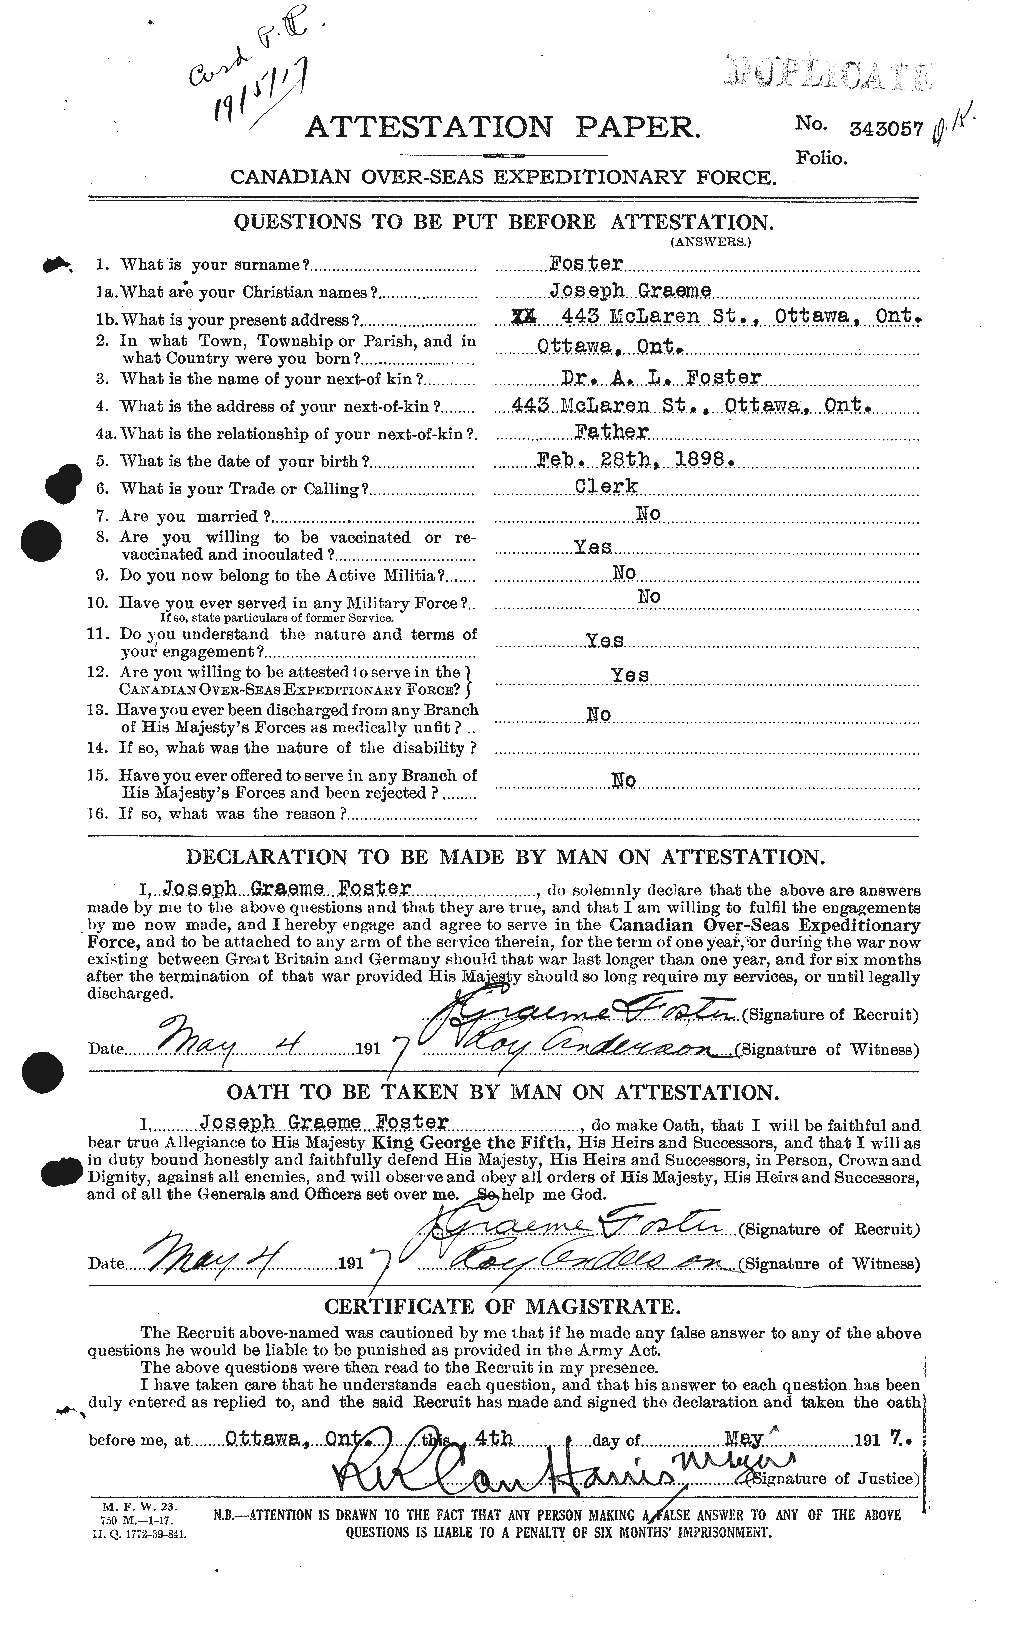 Dossiers du Personnel de la Première Guerre mondiale - CEC 333386a